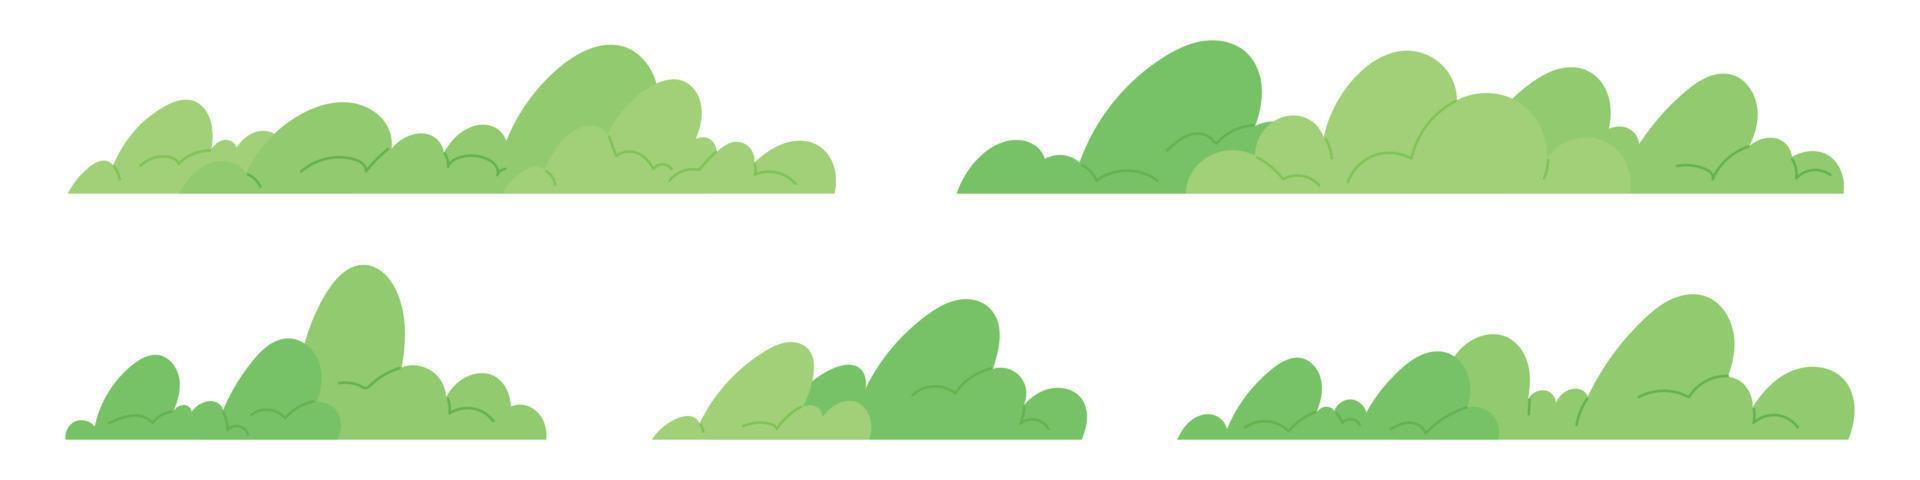 sencillo bosque arbustos silueta colección de arboles y pastos línea. dibujos animados vector ilustración